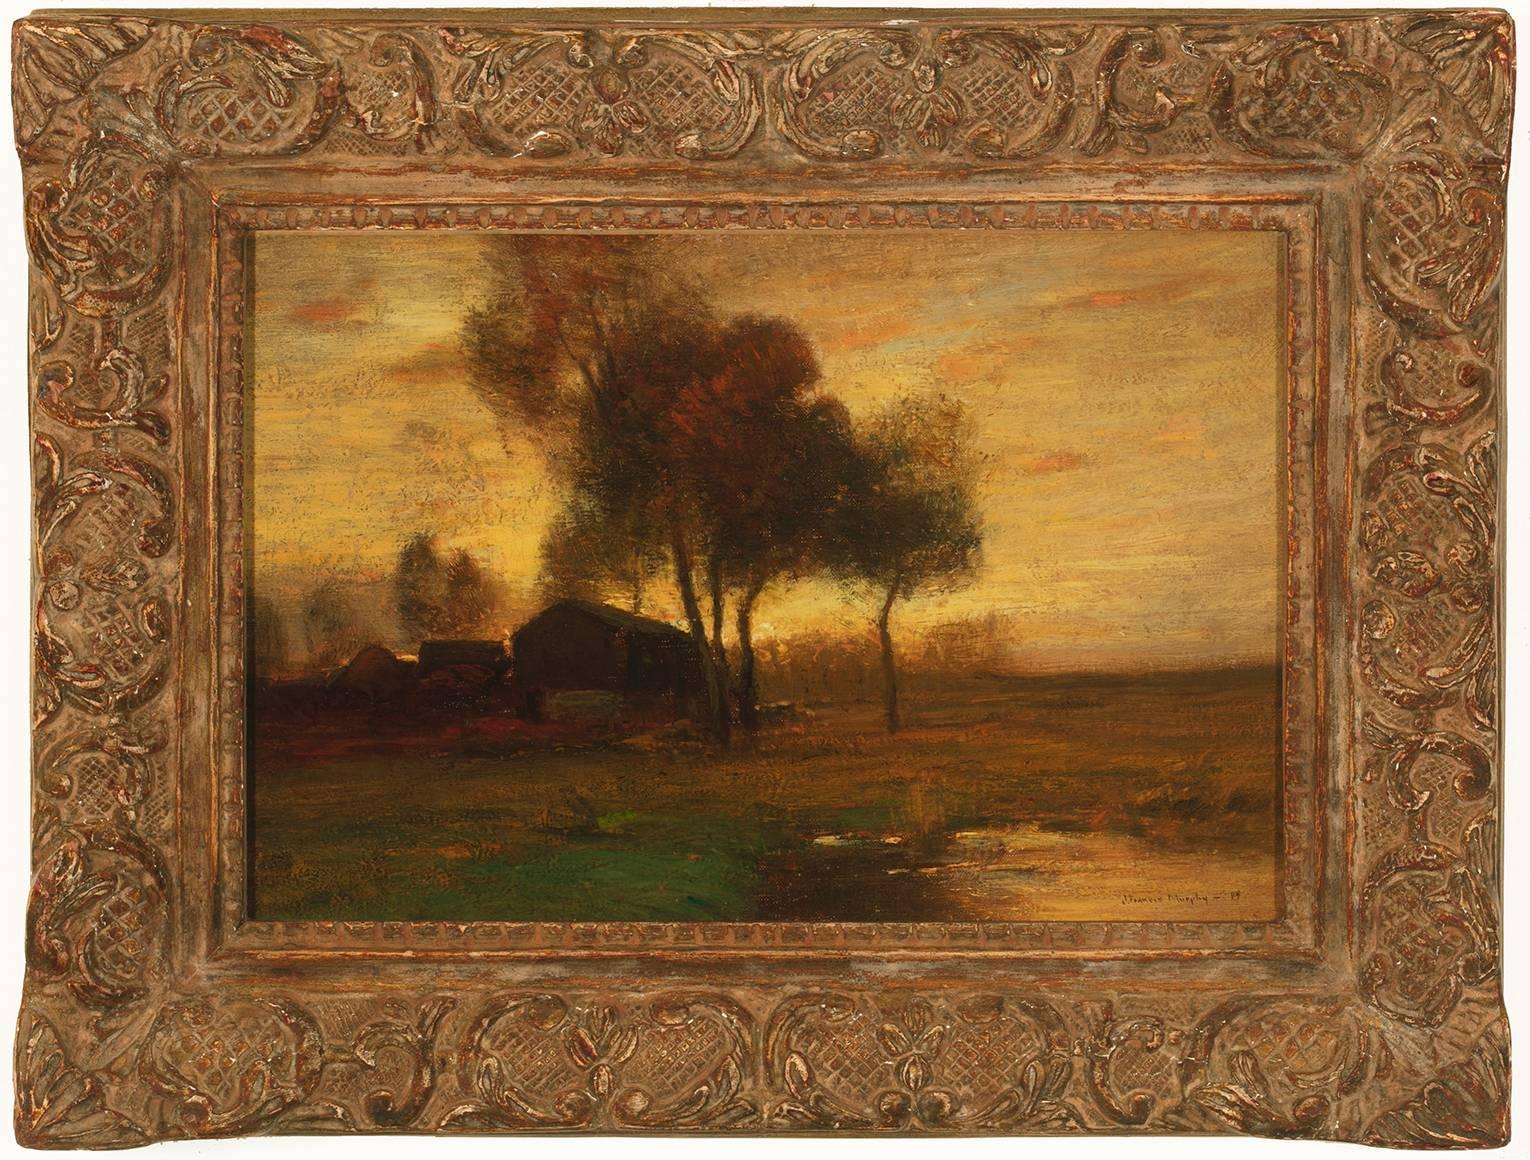 John Francis Murphy Landscape Painting - "Landscape with Farm"